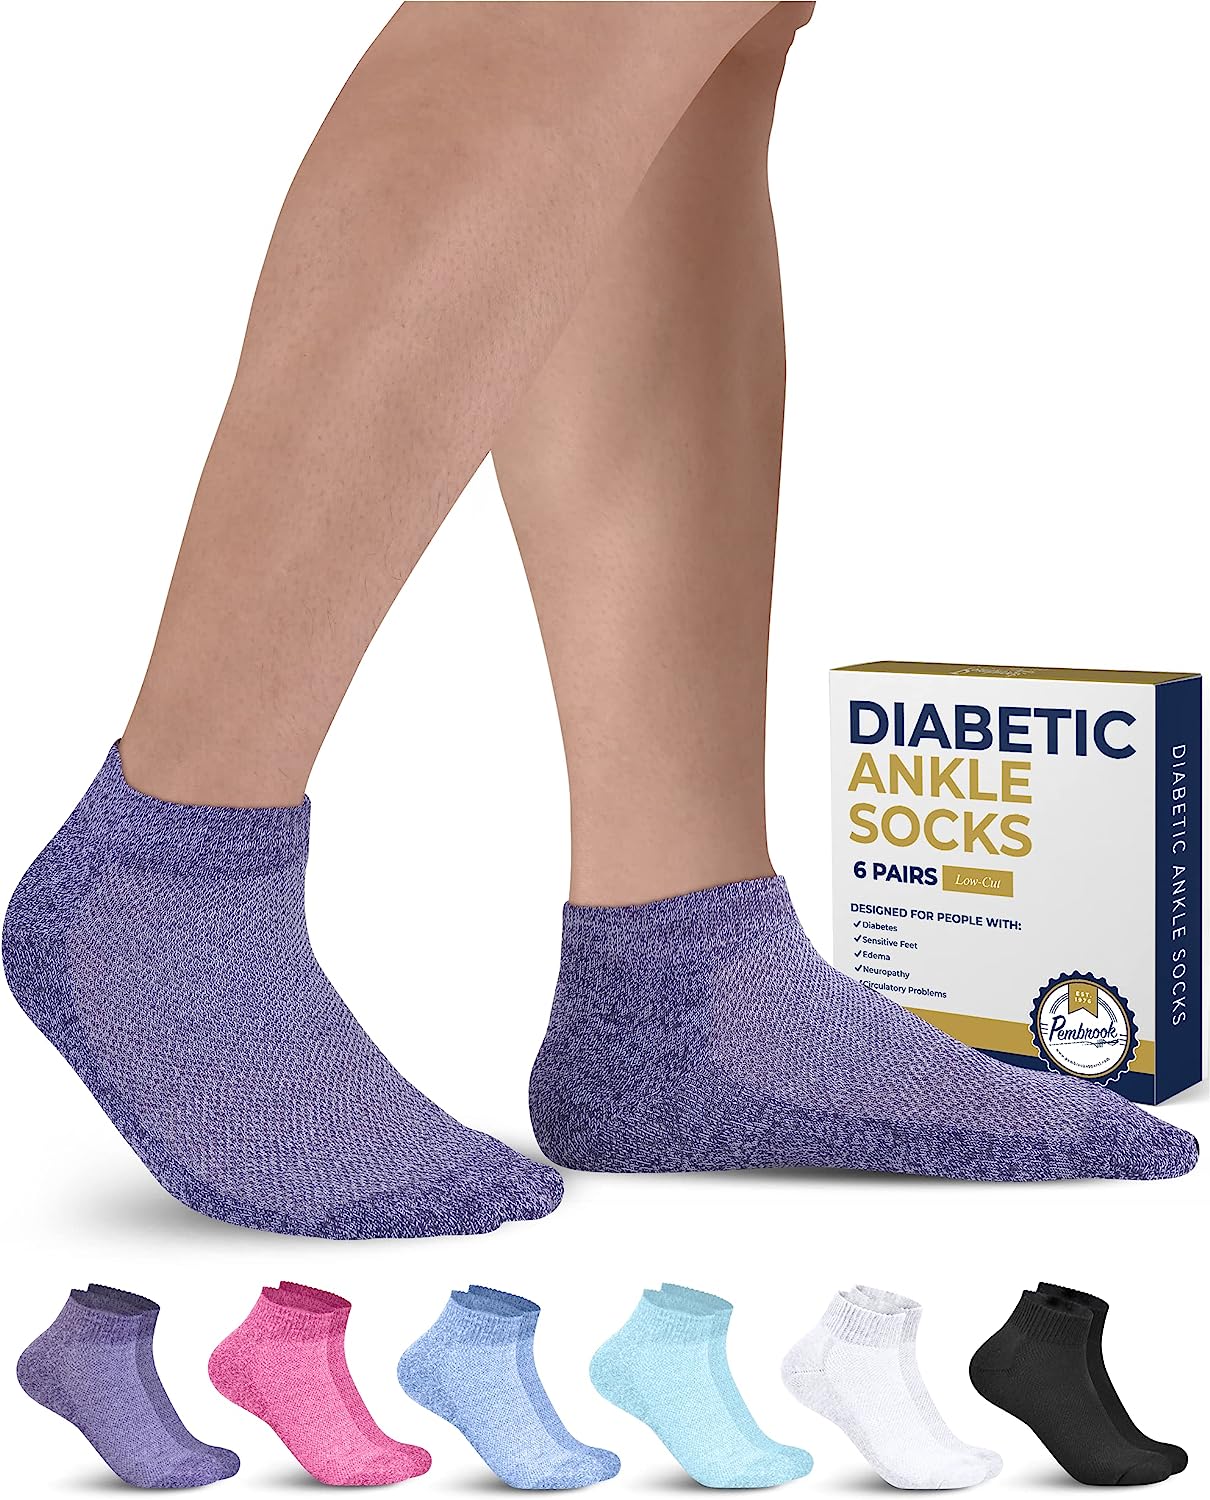 Pembrook Diabetic Socks for Women and Men - 6 Pairs [...]